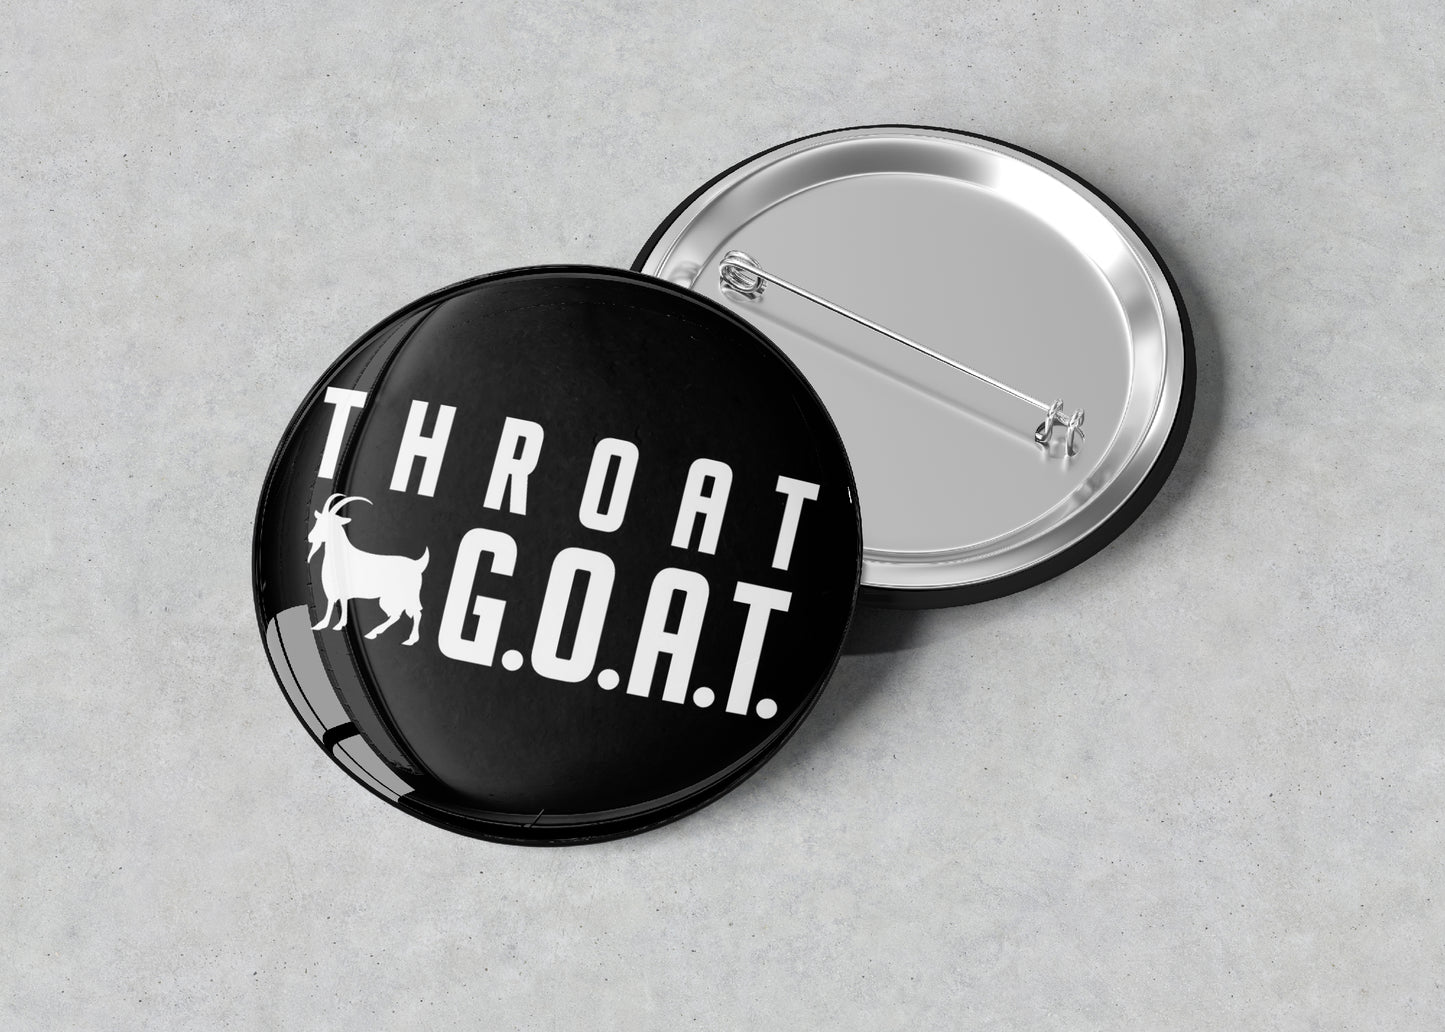 Blowjob Queen Throat GOAT Pin/Buttons